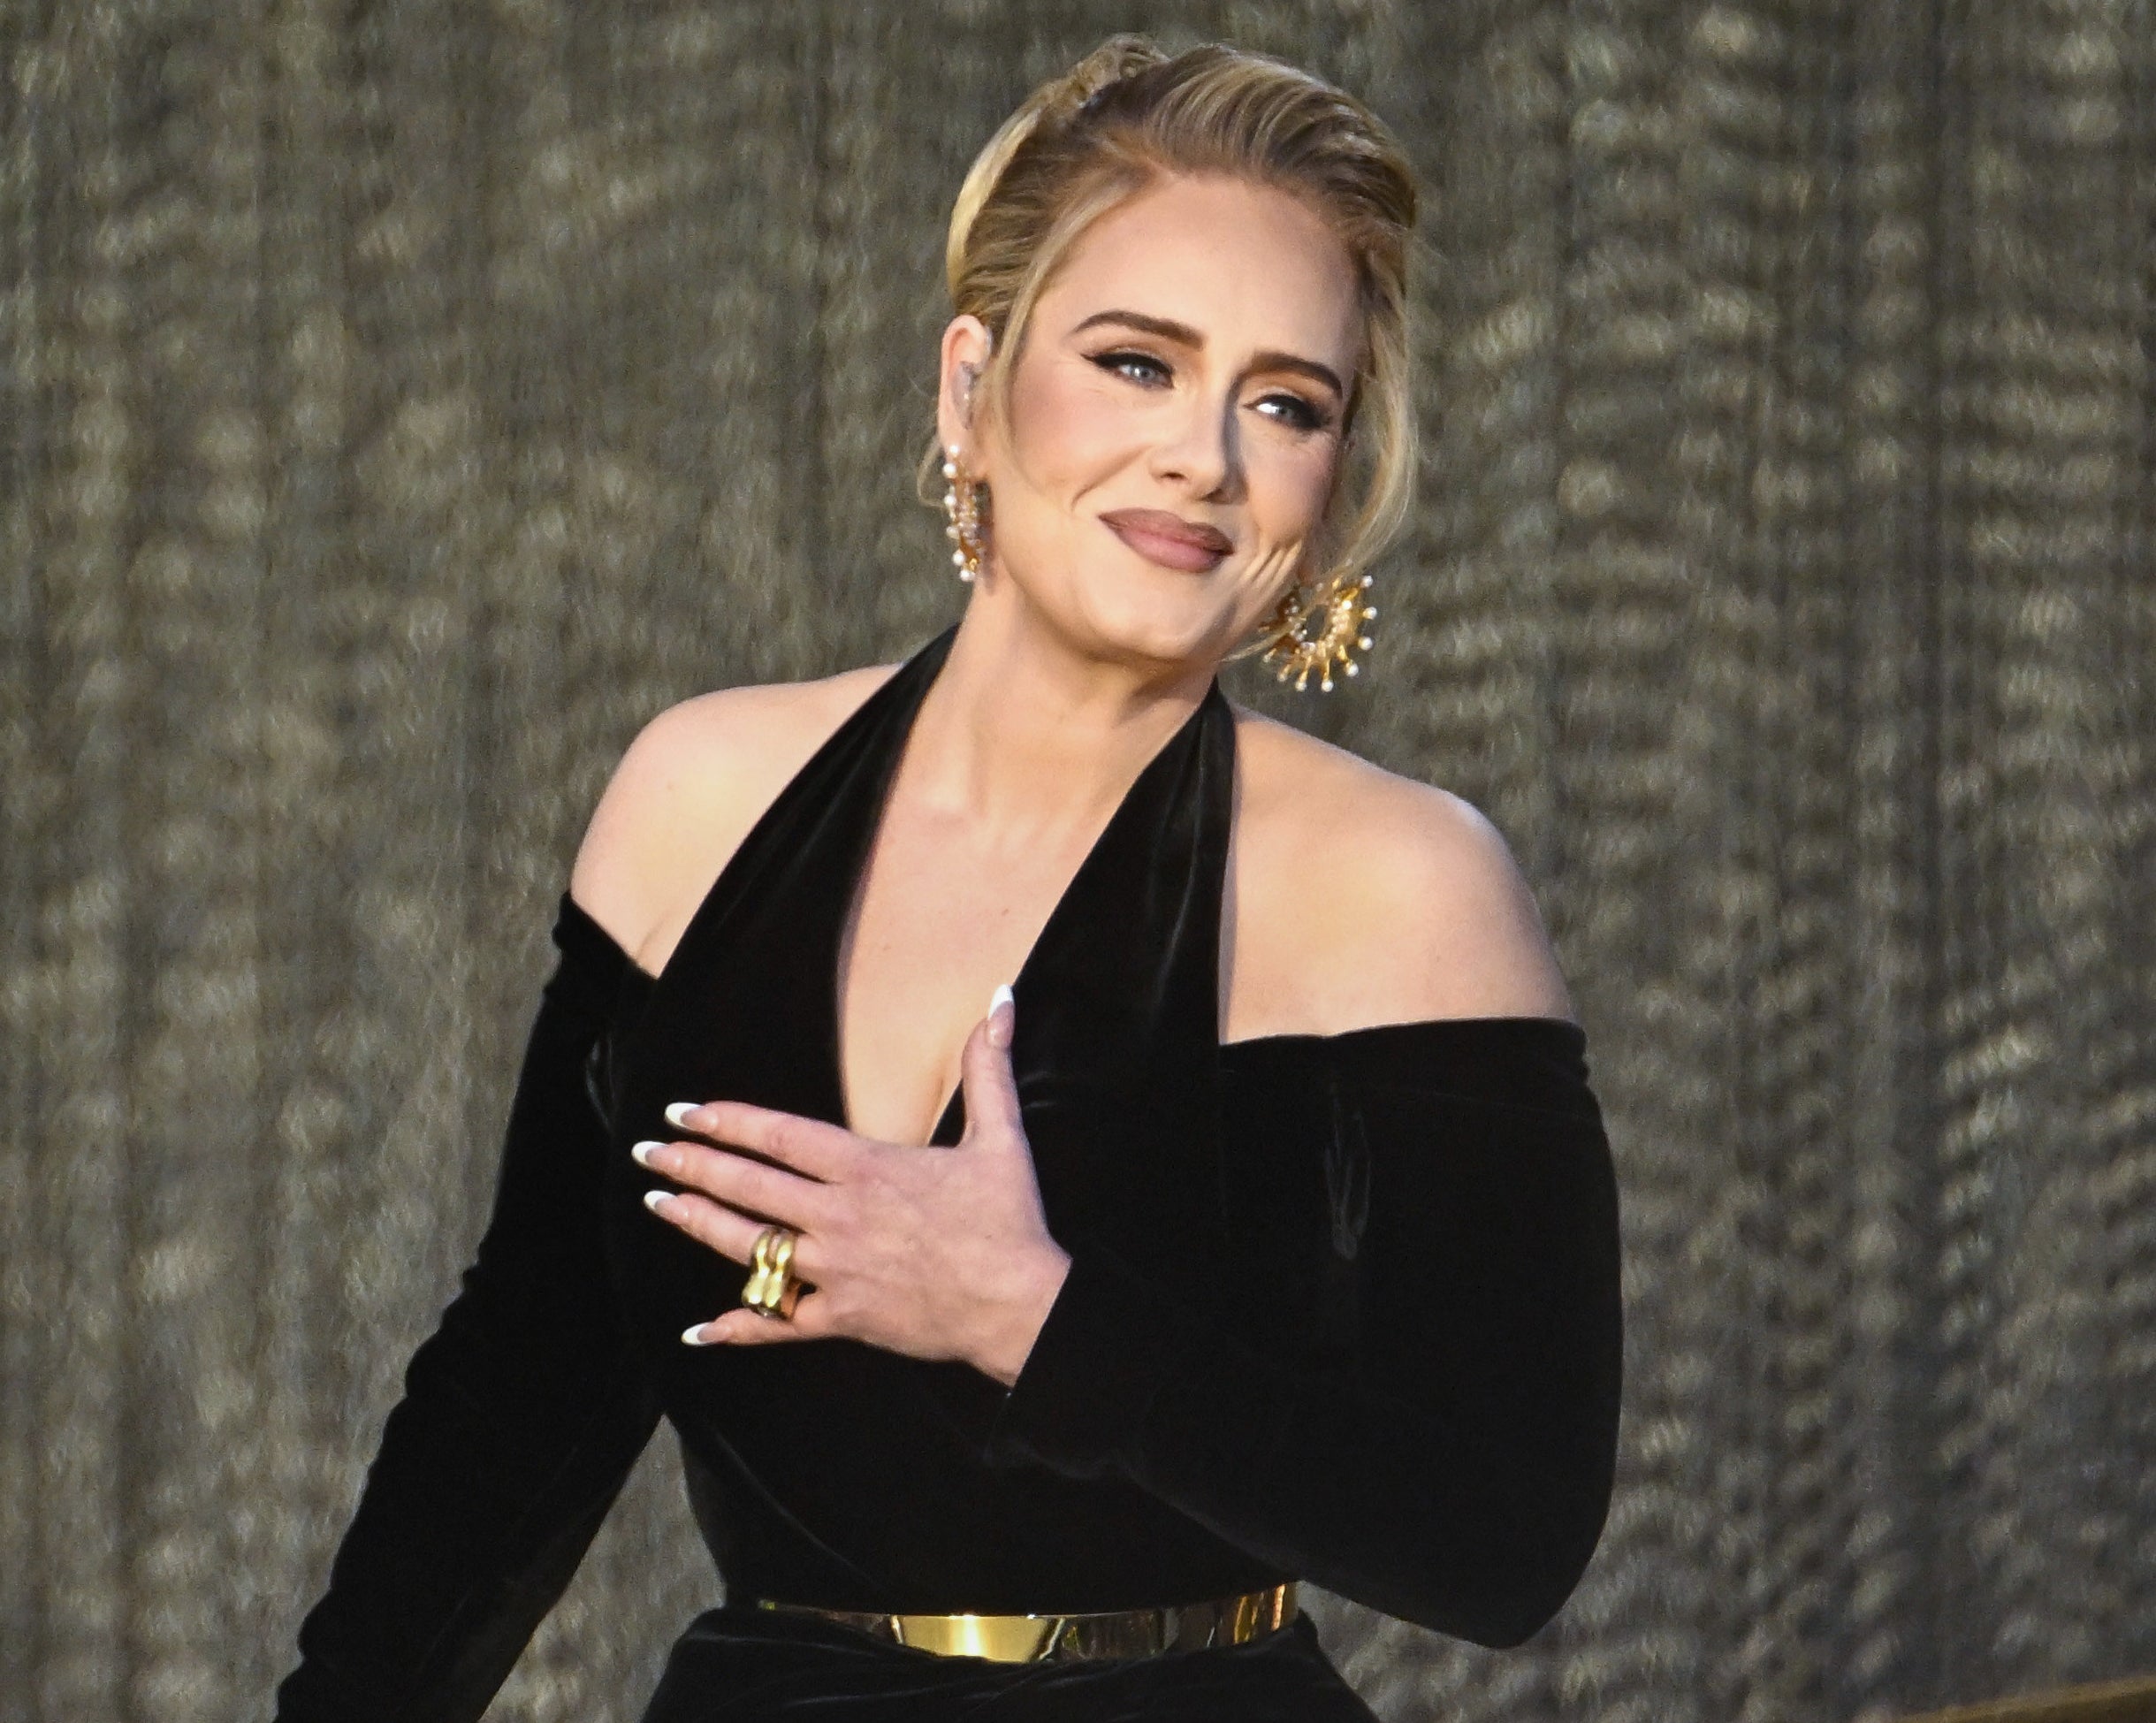 A closeup of Adele